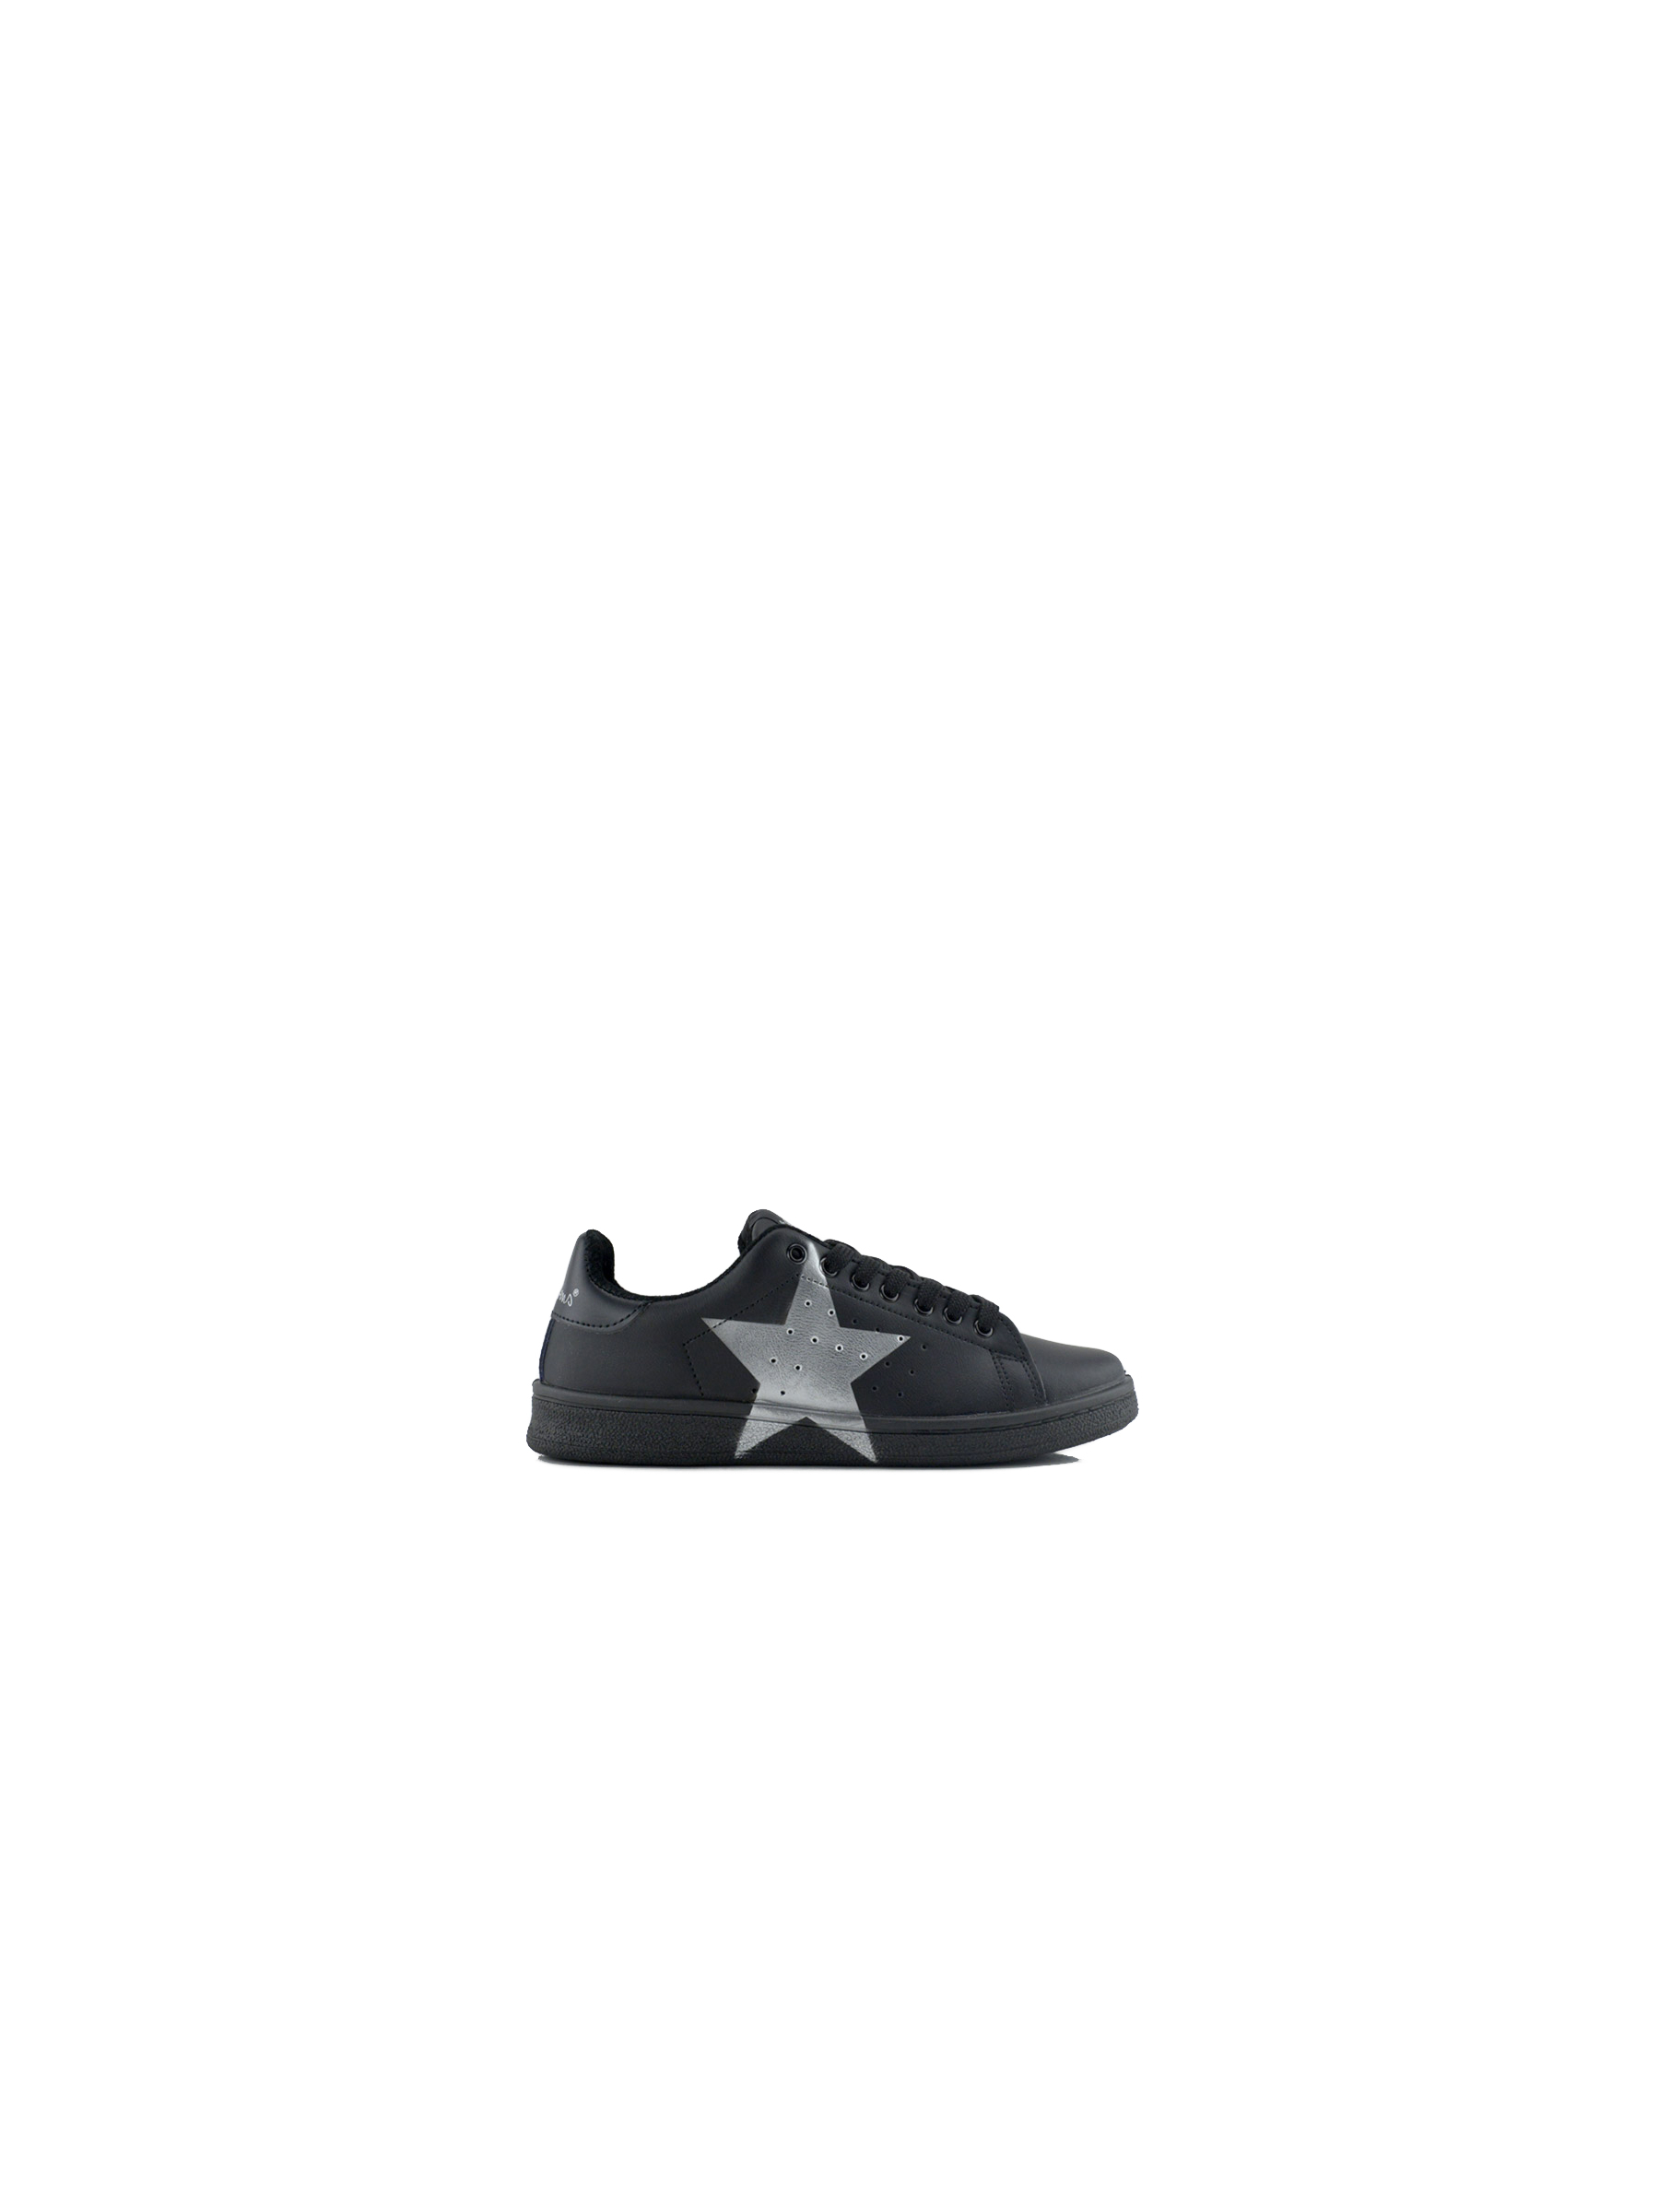 Sneaker donna in pelle con lacci e stampa stella nero